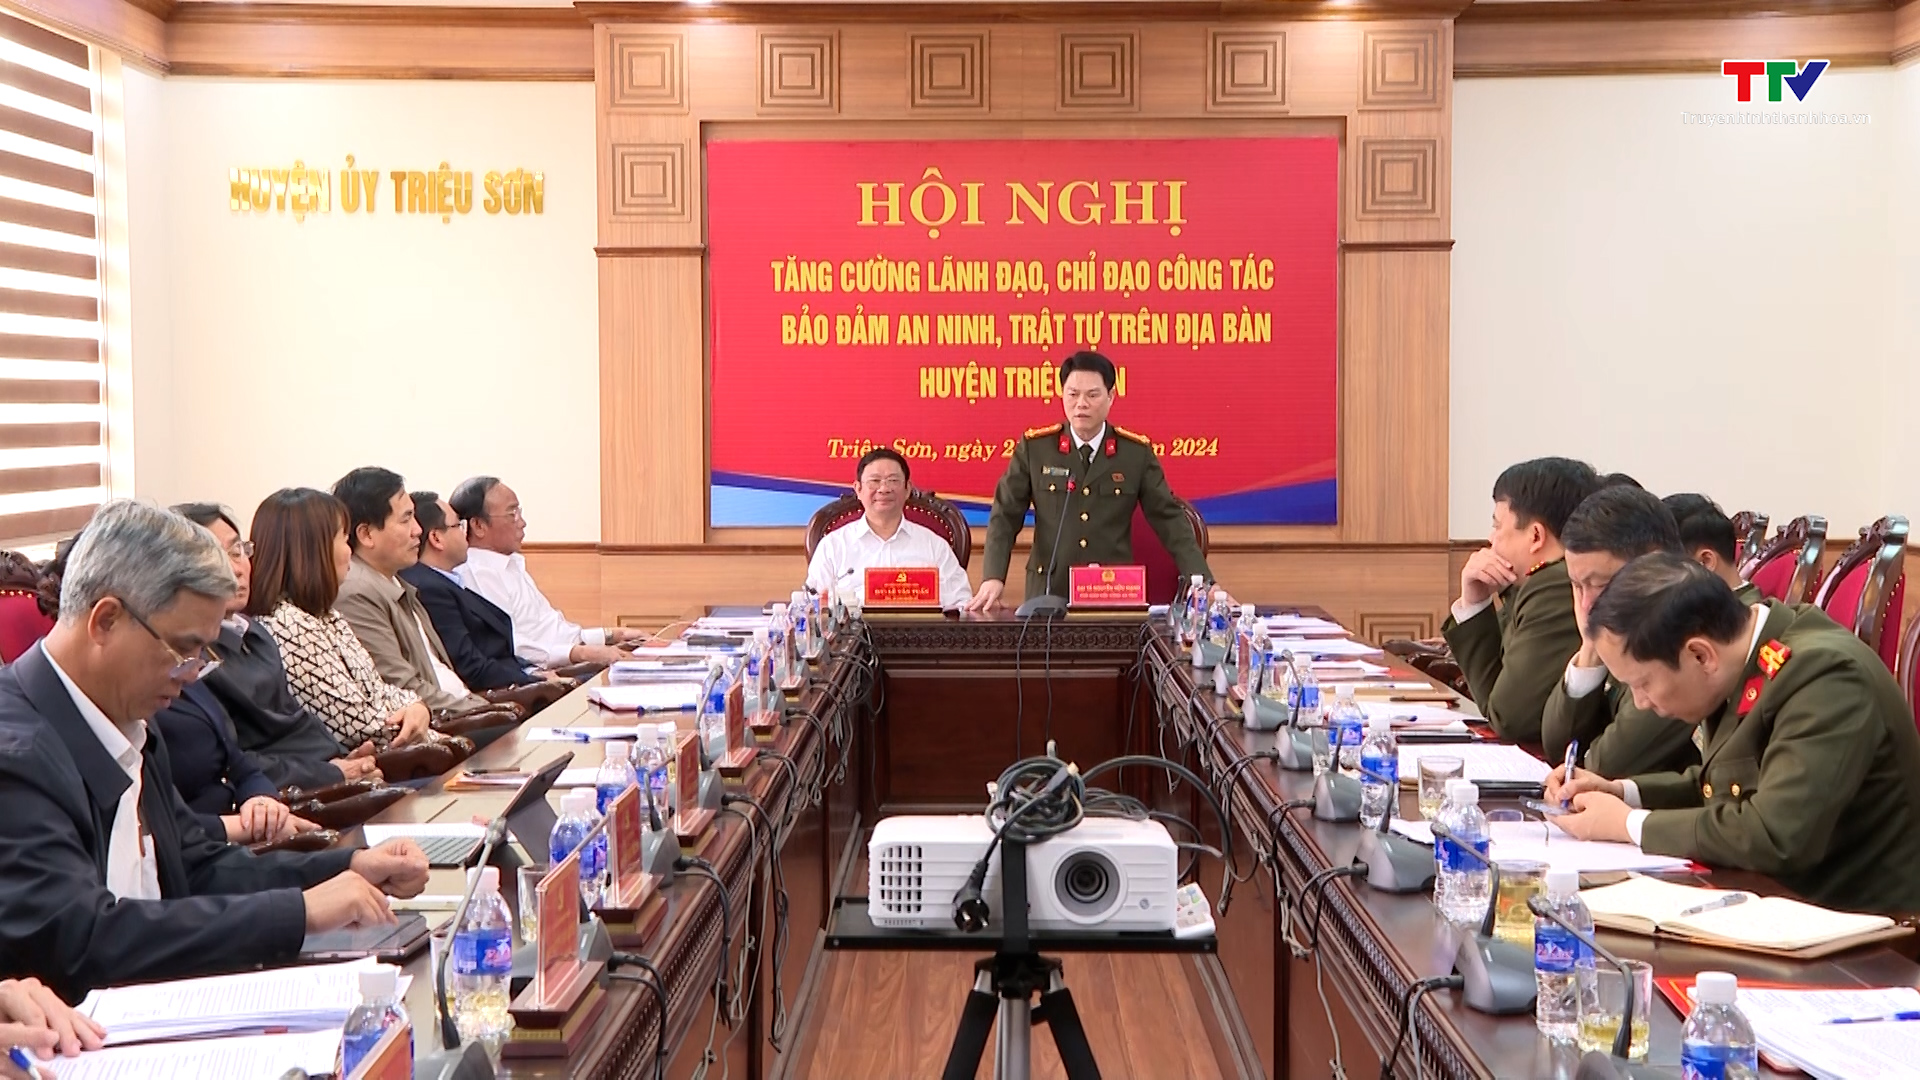 Triệu Sơn tăng cường lãnh đạo công tác bảo đảm an ninh, trật tự- Ảnh 1.